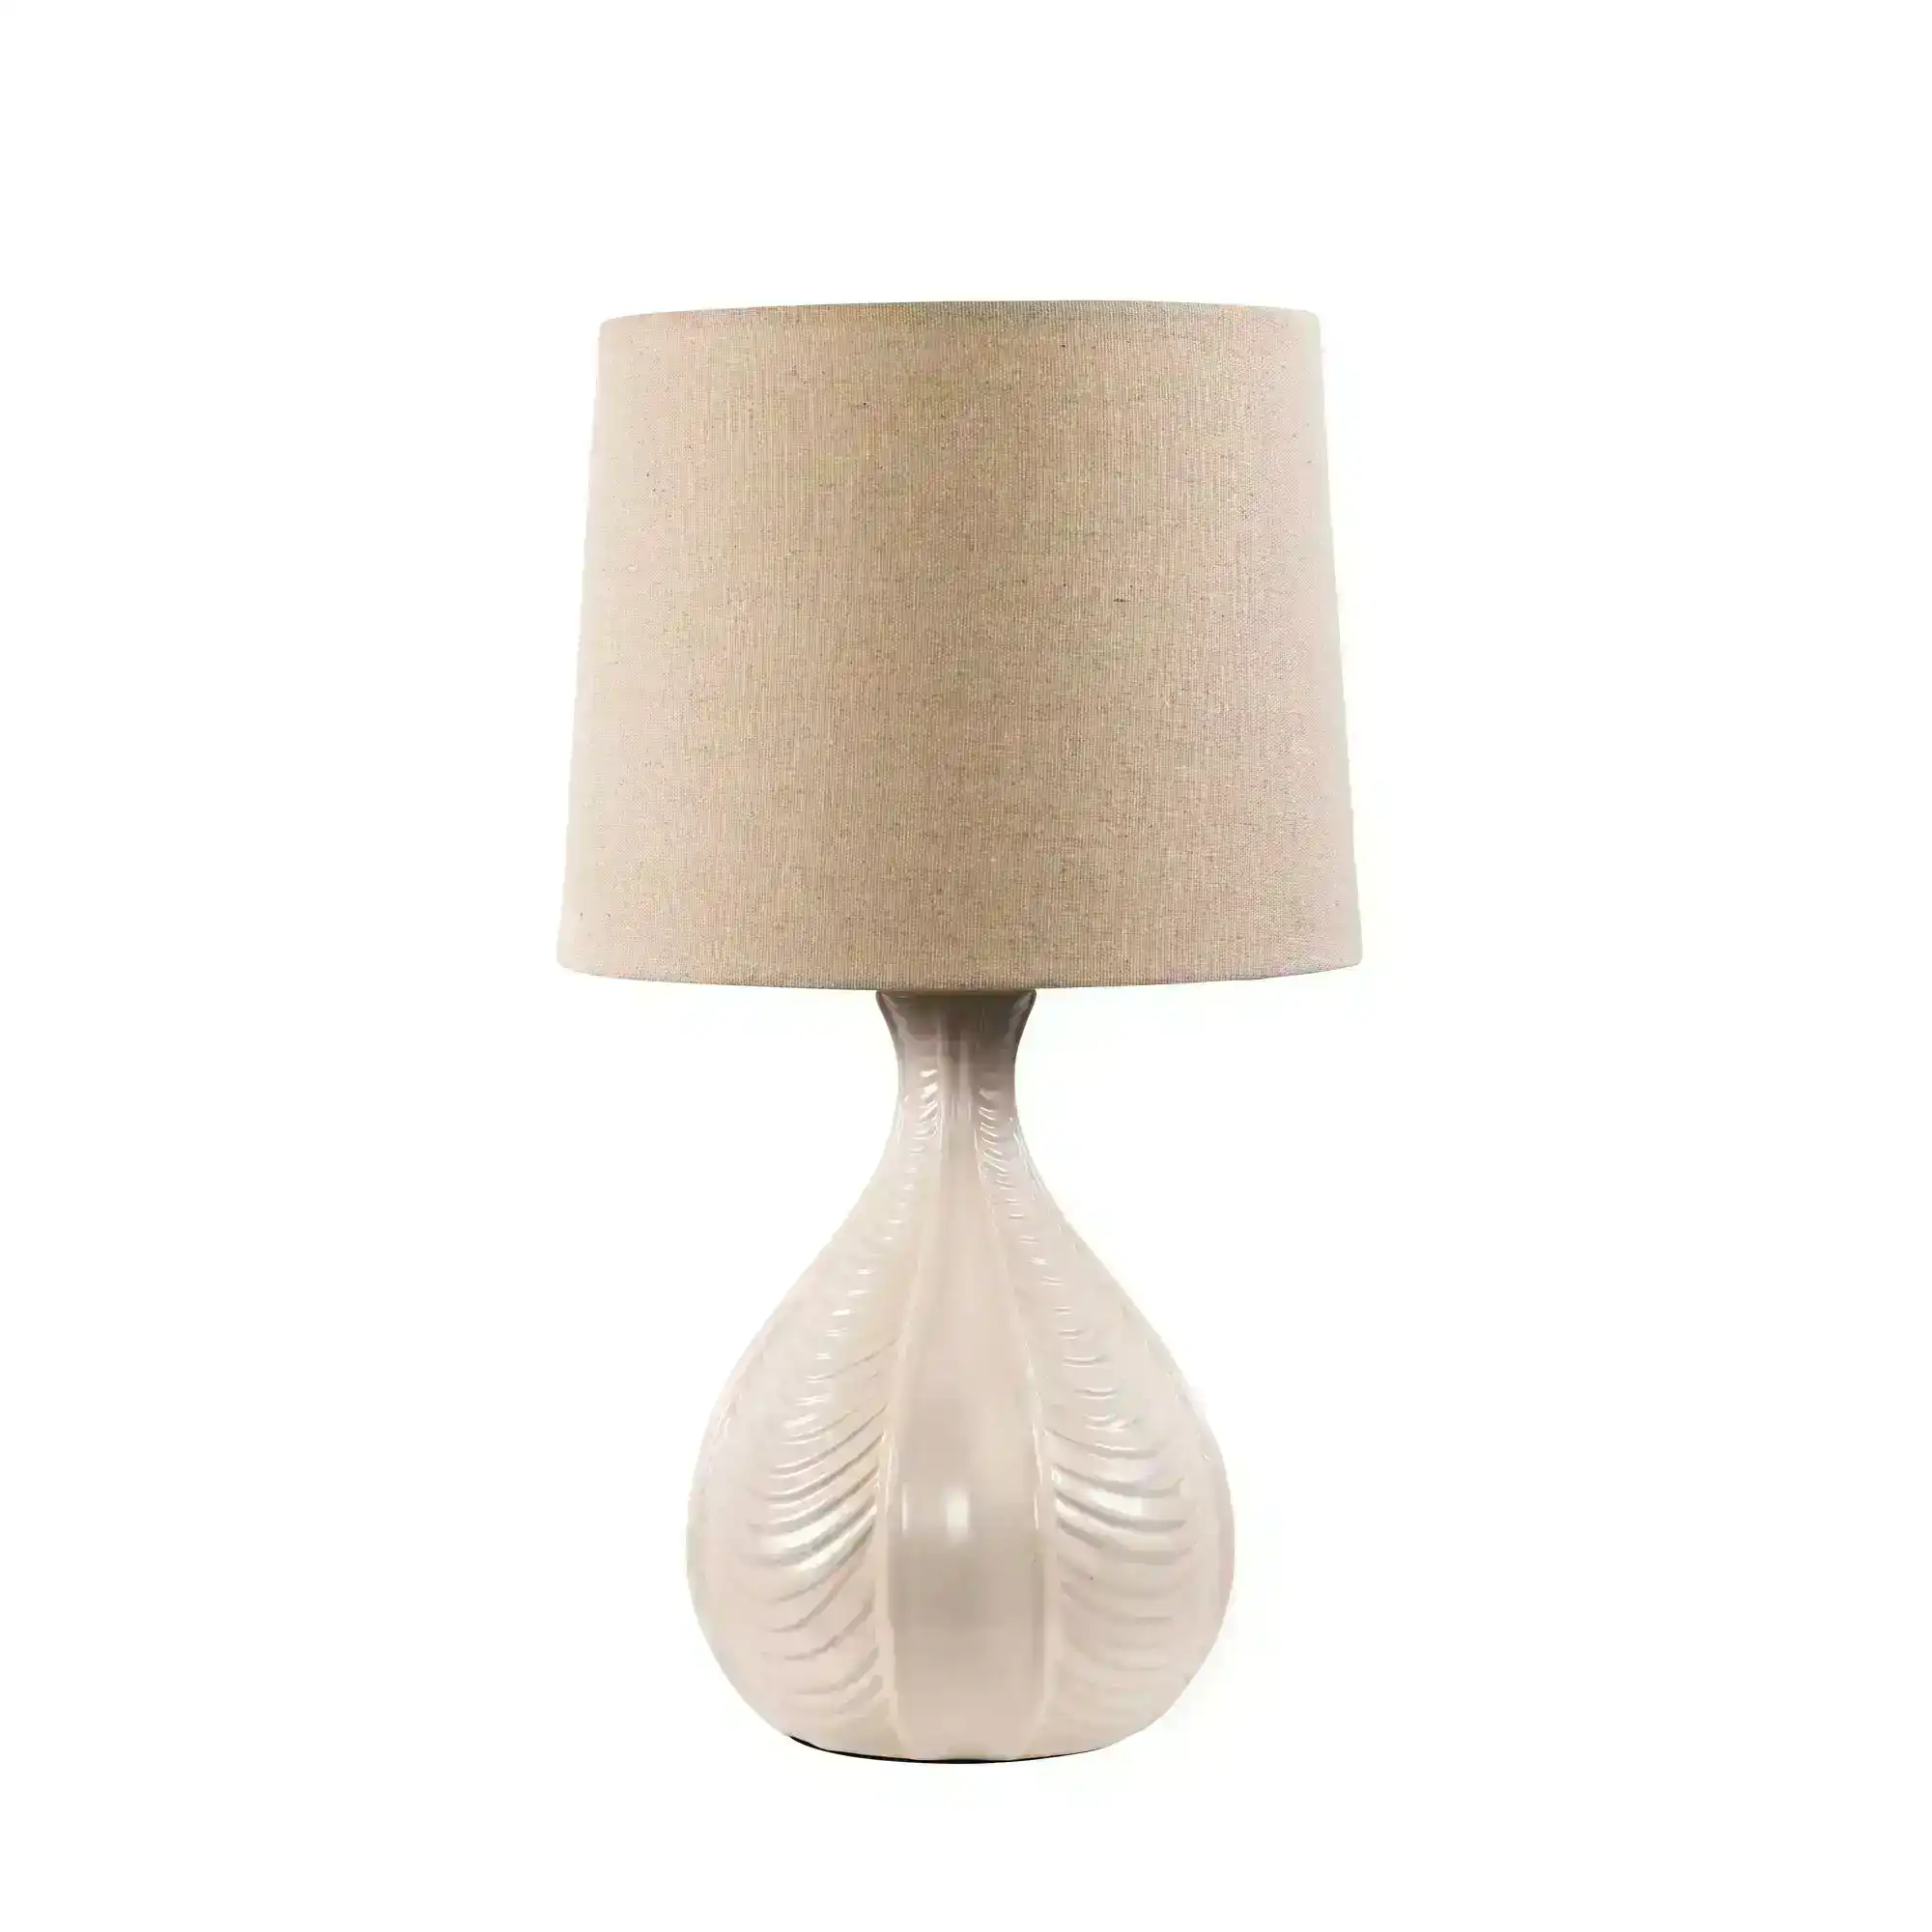 GAIA Ceramic Table Lamp